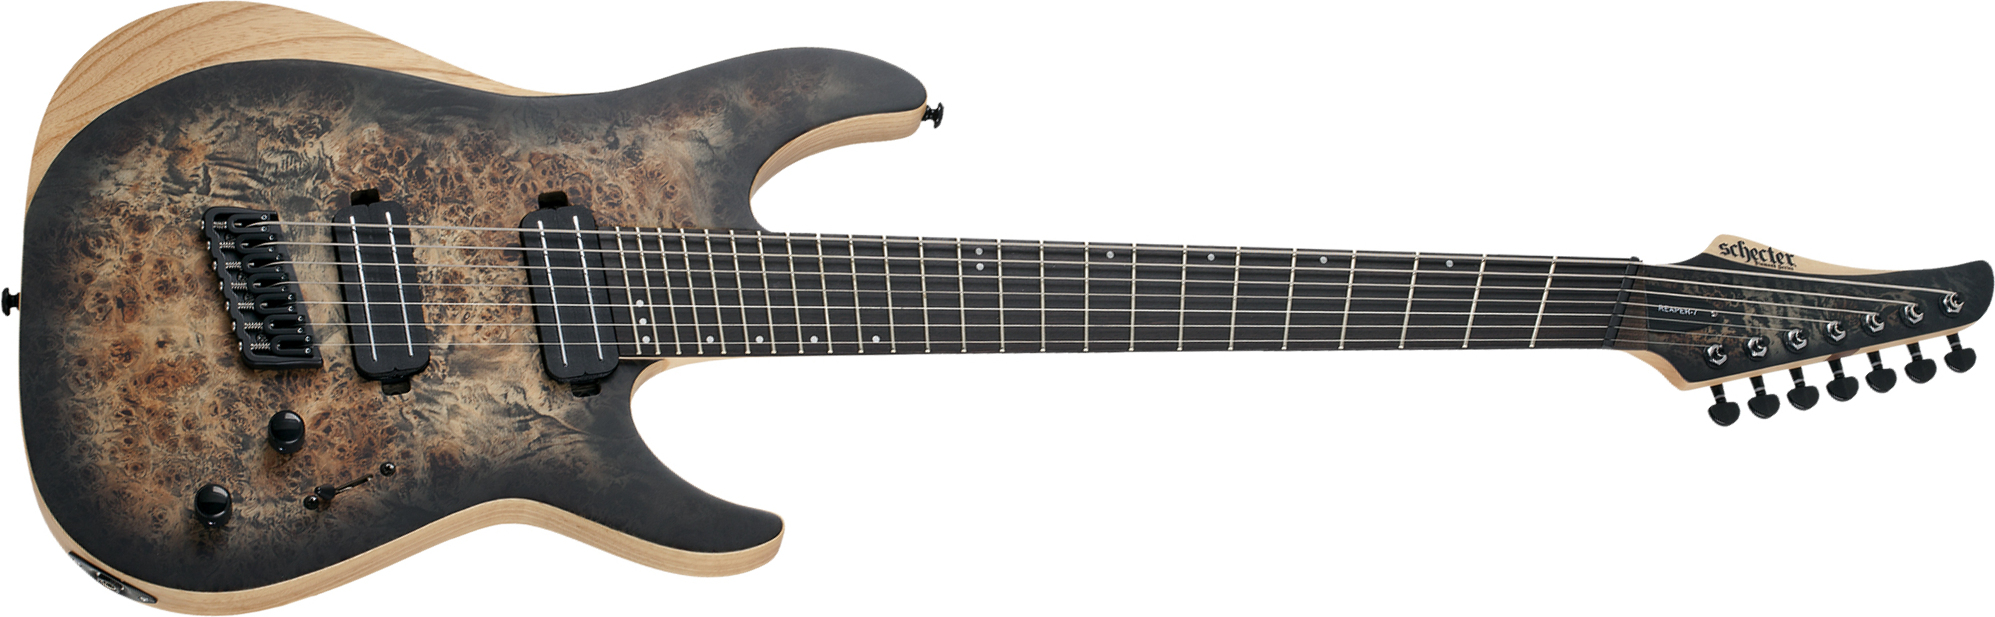 Schecter Reaper-7 Multiscale 7c Ht 2h Eb - Satin Charcoal Burst - Multi-Scale Guitar - Main picture